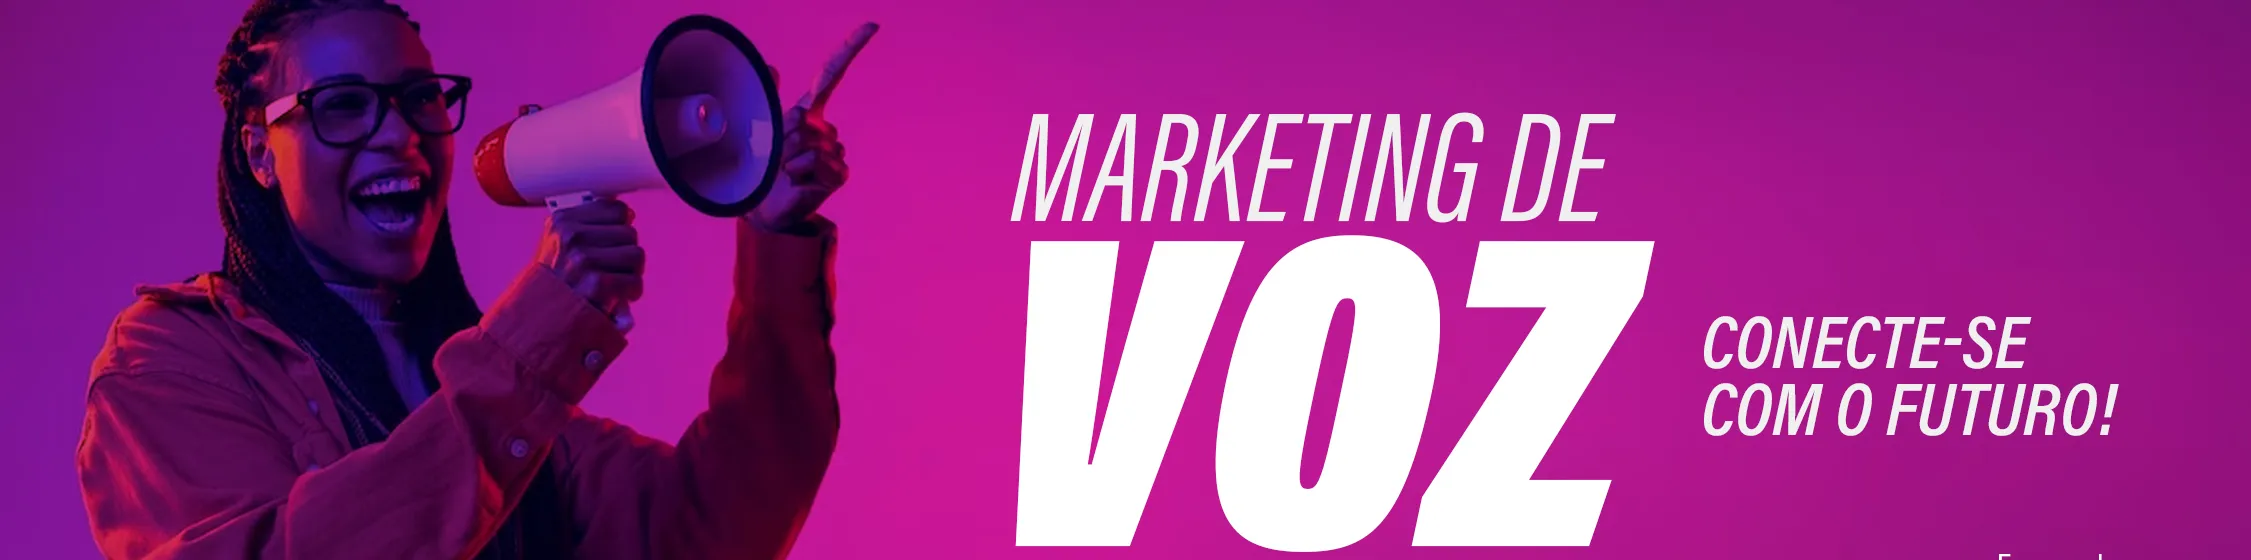 Explore todo o potencial do Voice Marketing